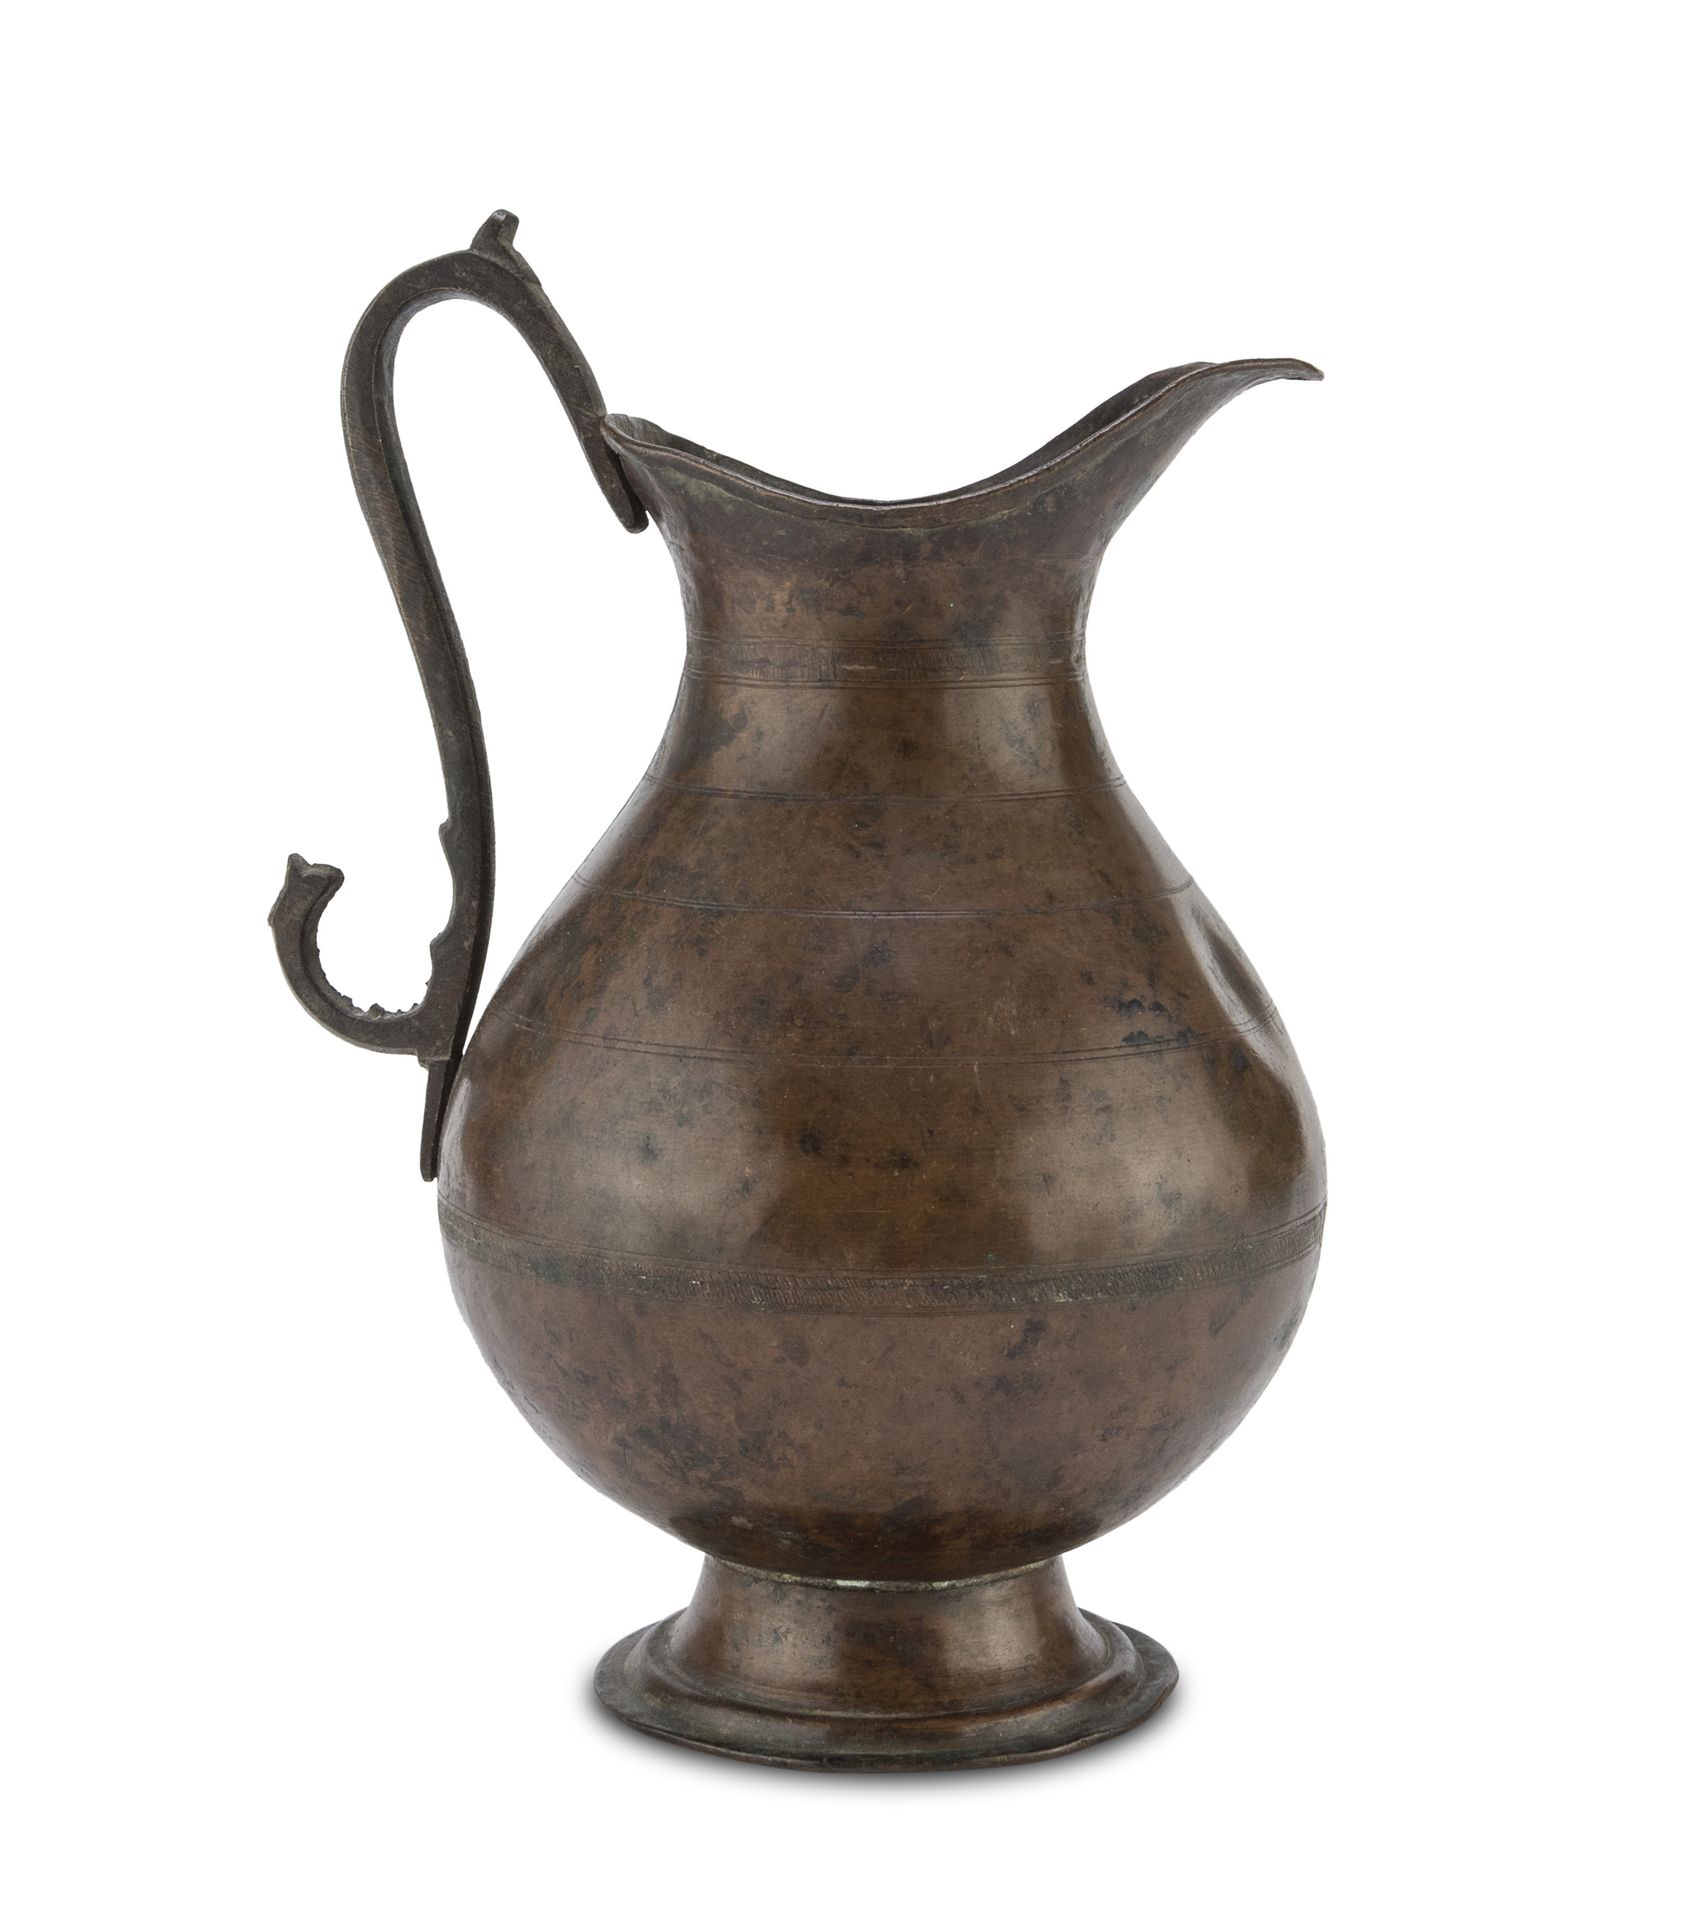 Null 罕见的铜浇花器，托斯卡纳，18世纪

有棱纹的栏杆体和锻铁手柄。

尺寸为32 x 18 x 20厘米。